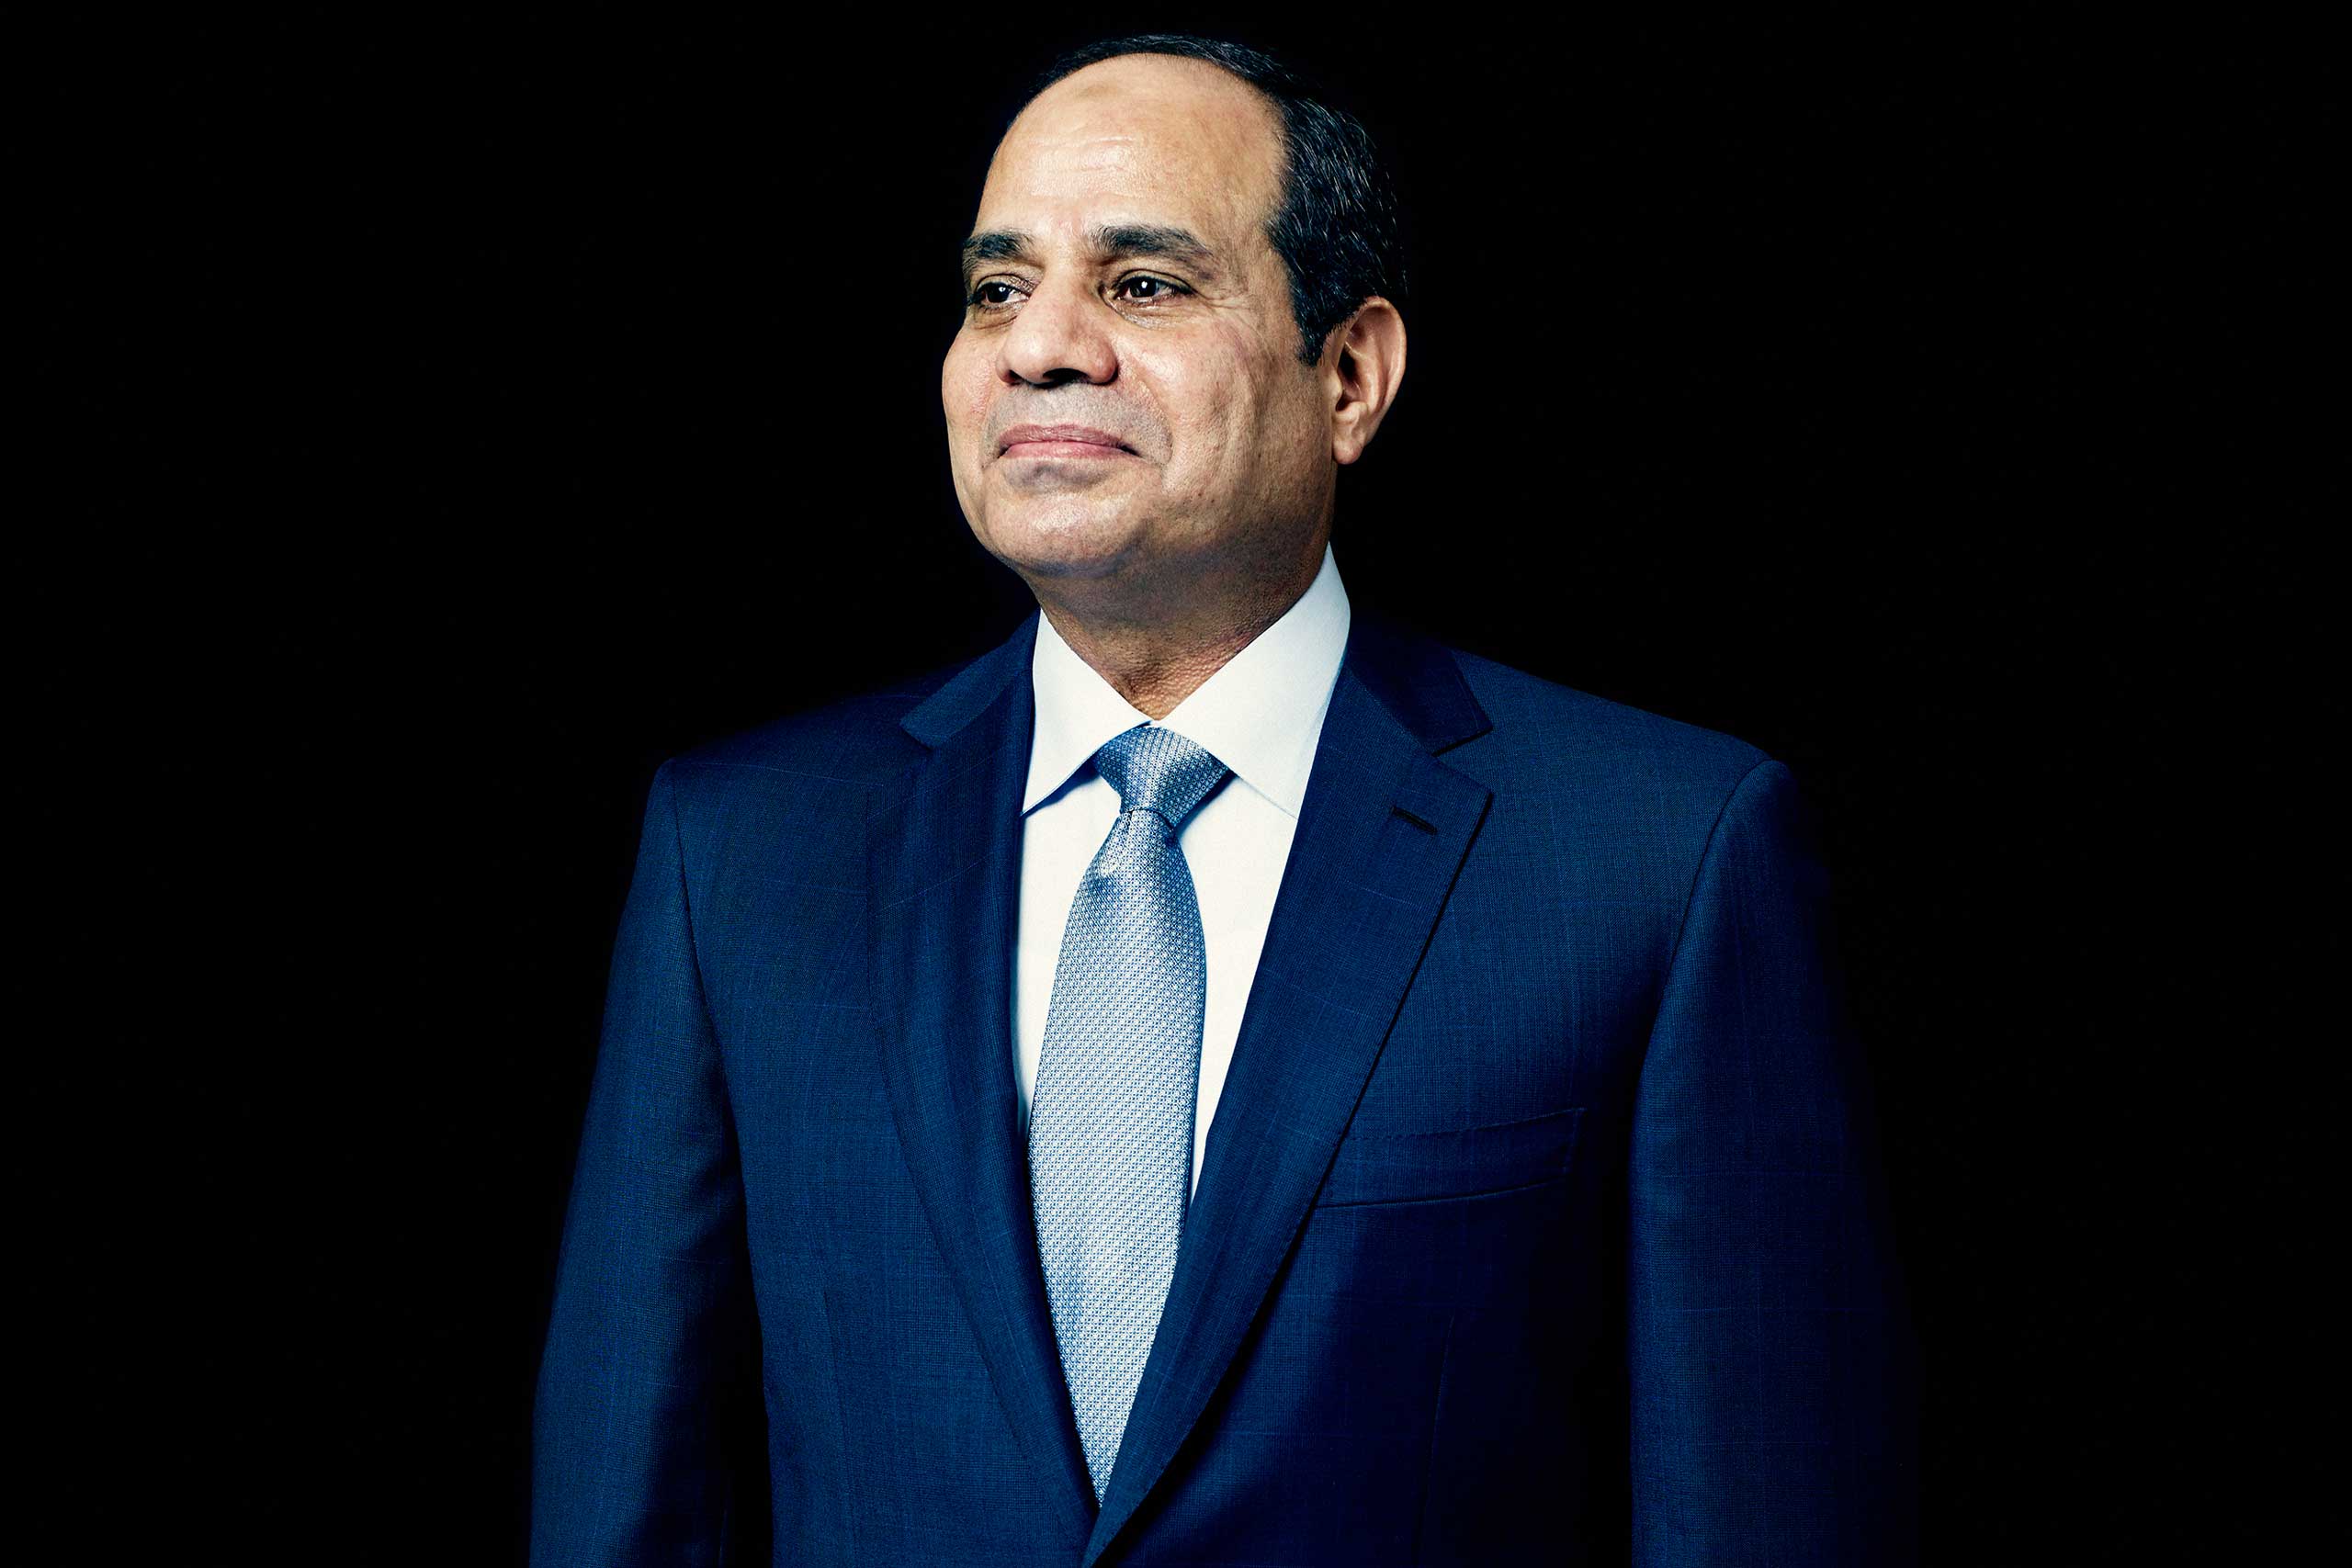 President Abdul Fattah al-Sisi of Egypt in New York City on Sept. 23, 2014 (Peter Hapak for TIME)